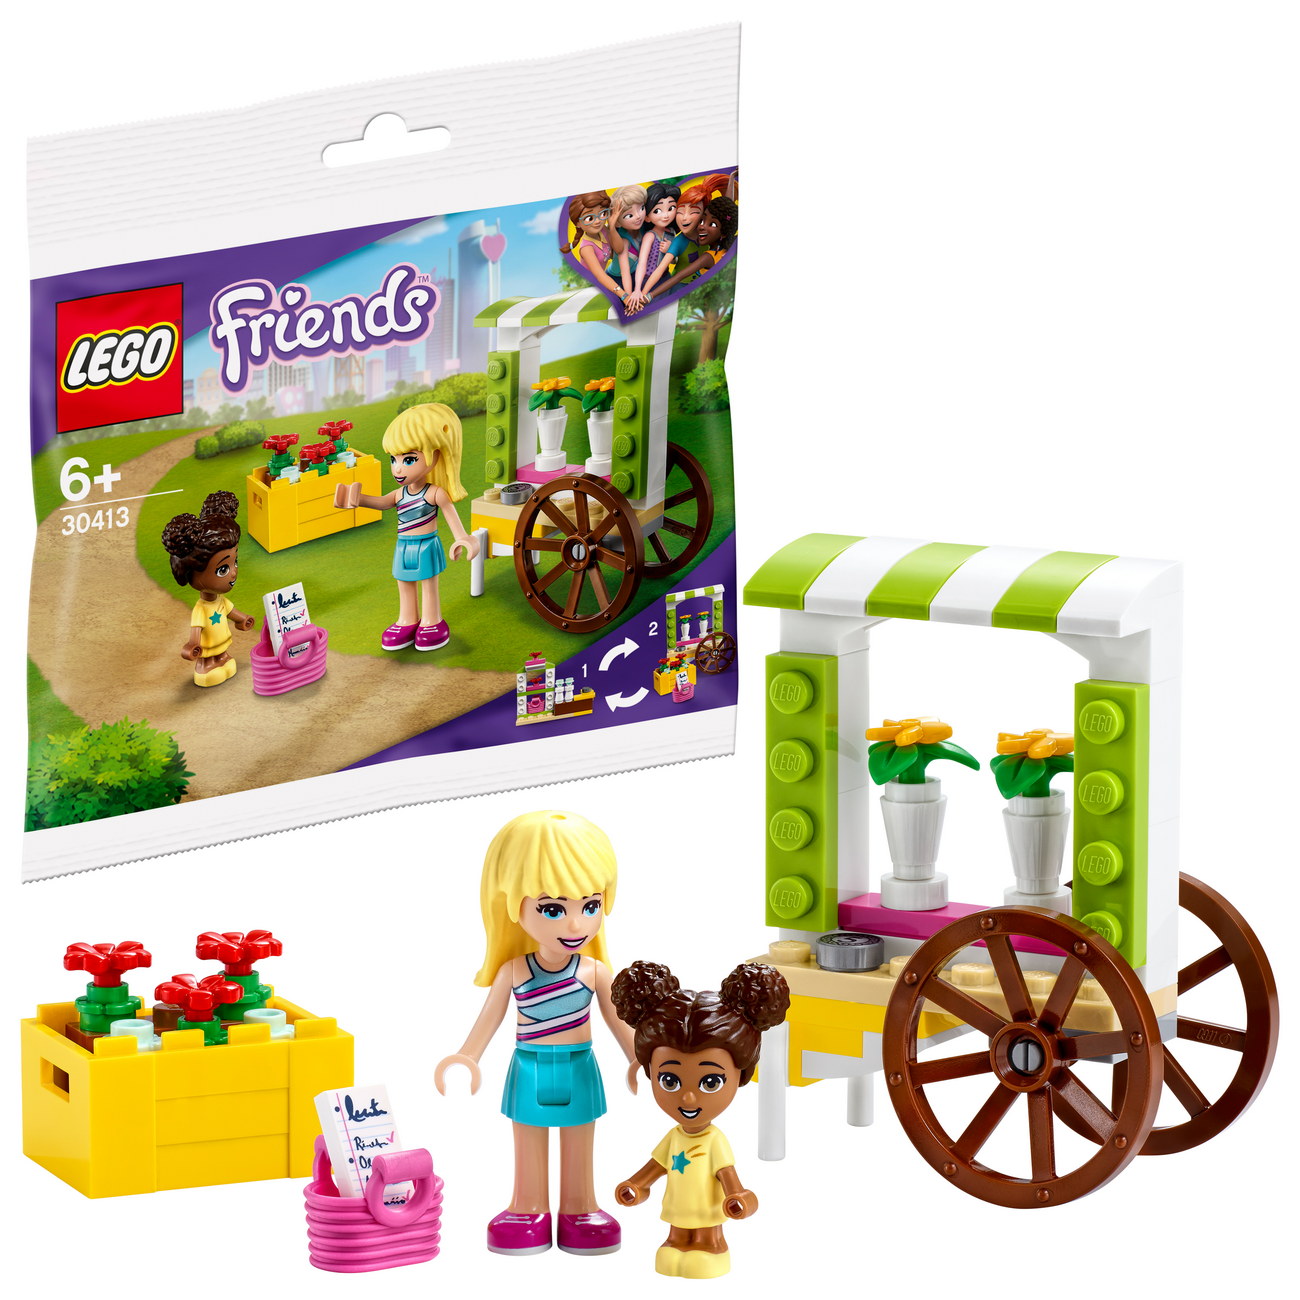 LEGO Friends - Blumenwagen (30413) - Polybag